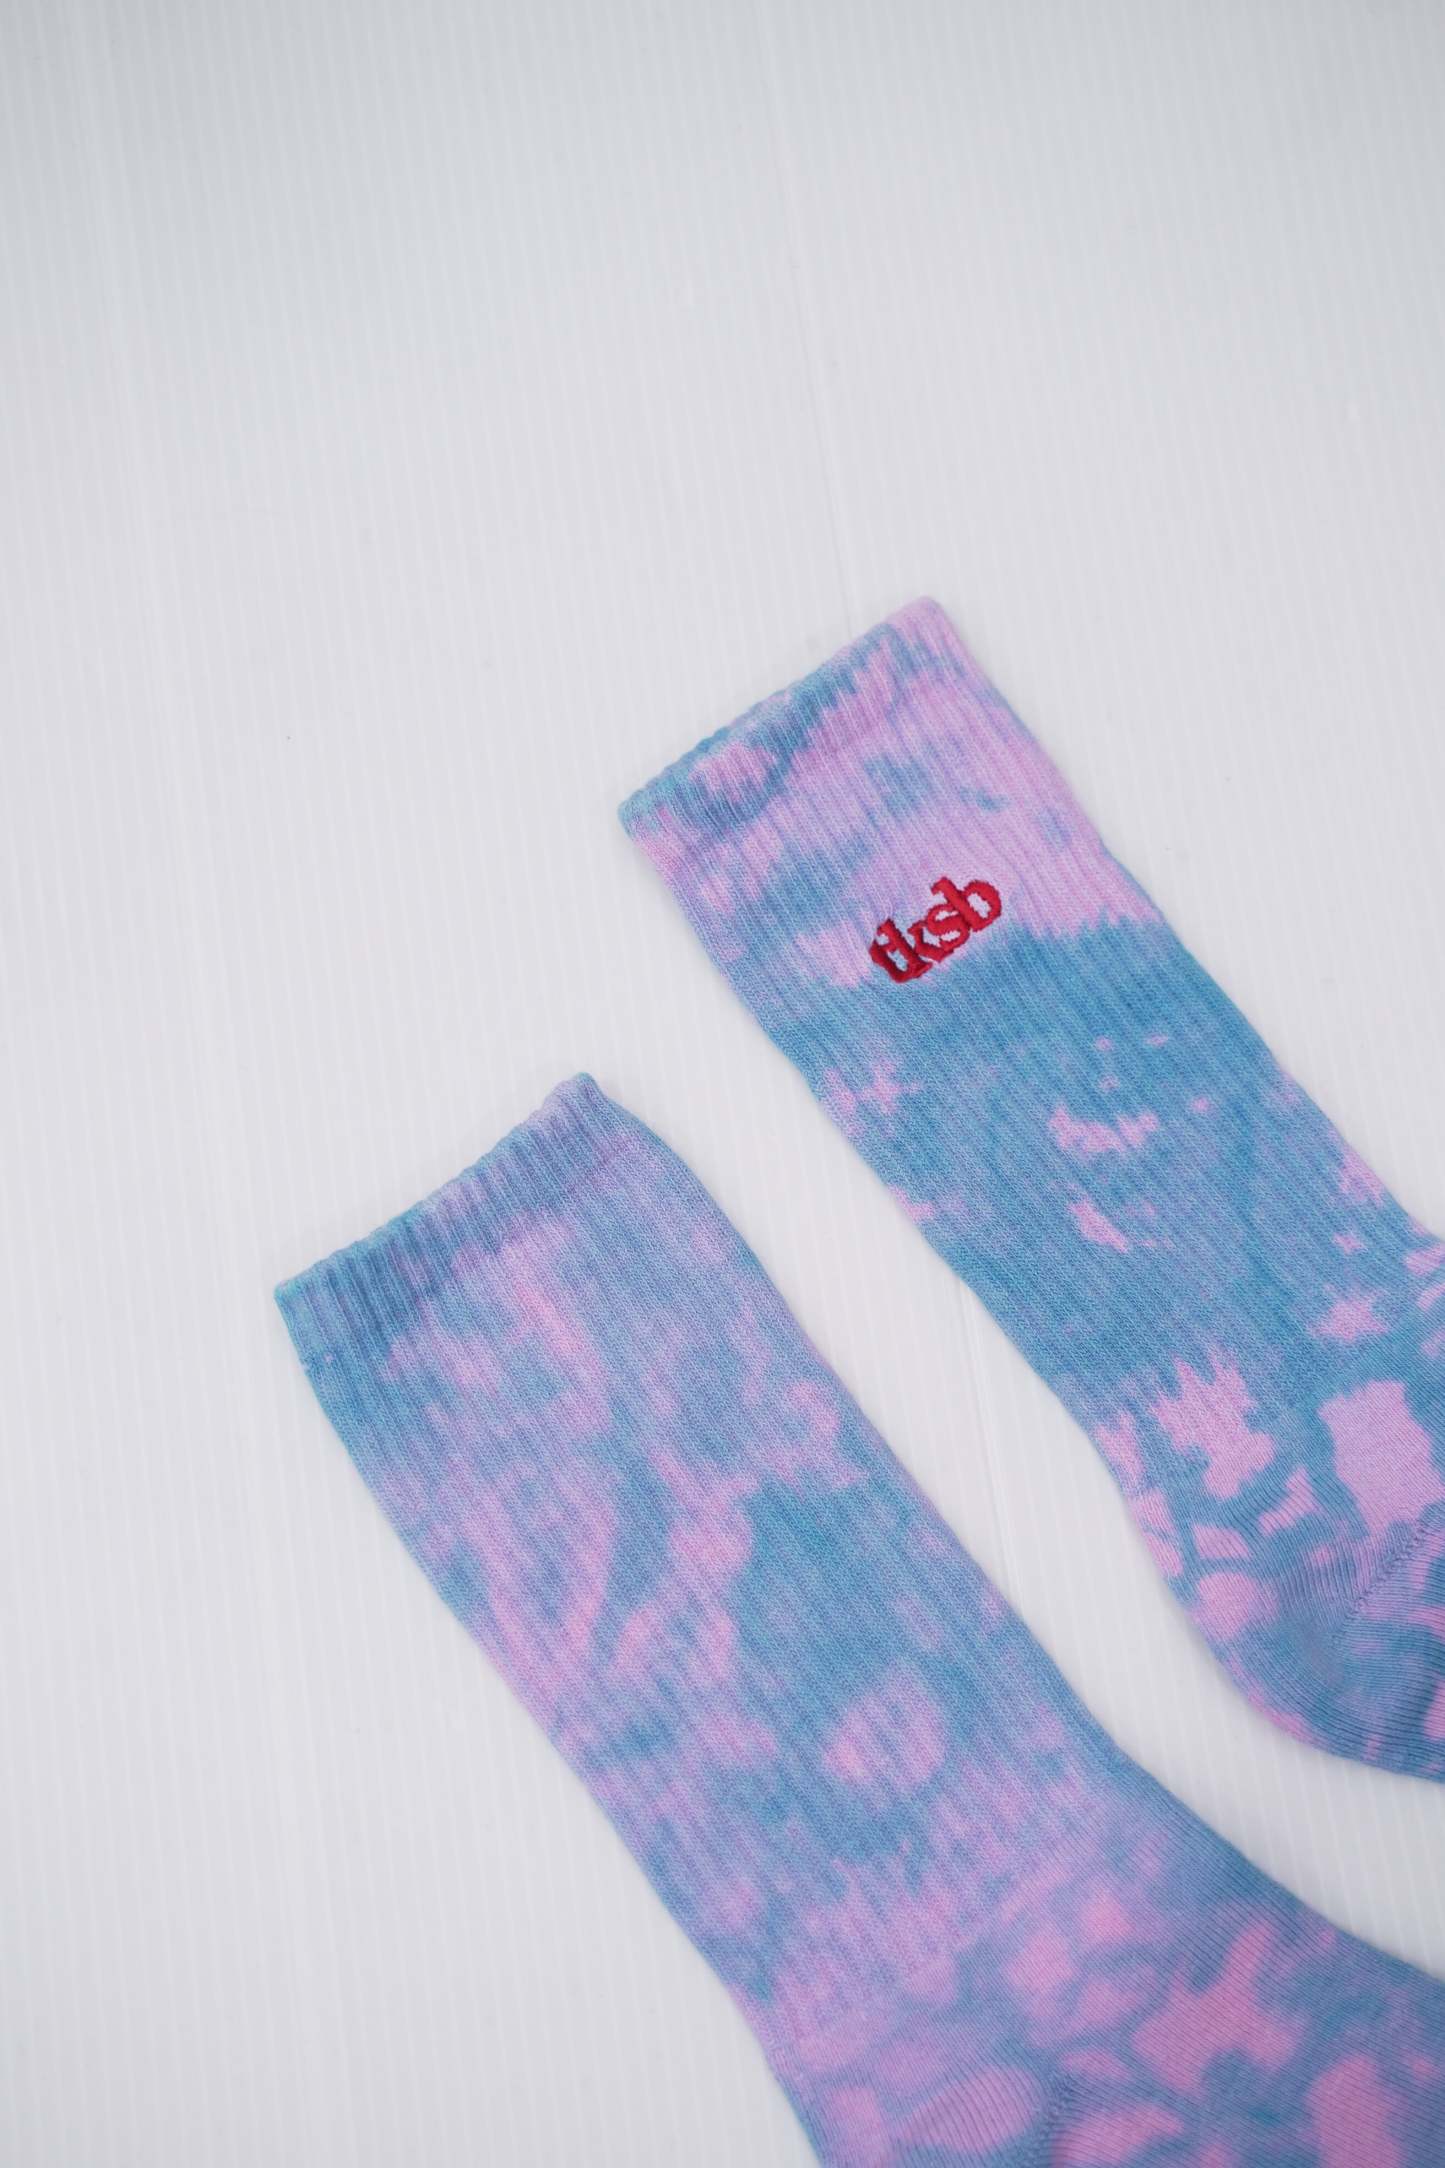 TKSB - Tie Dye Soda Blue/Pink Socks